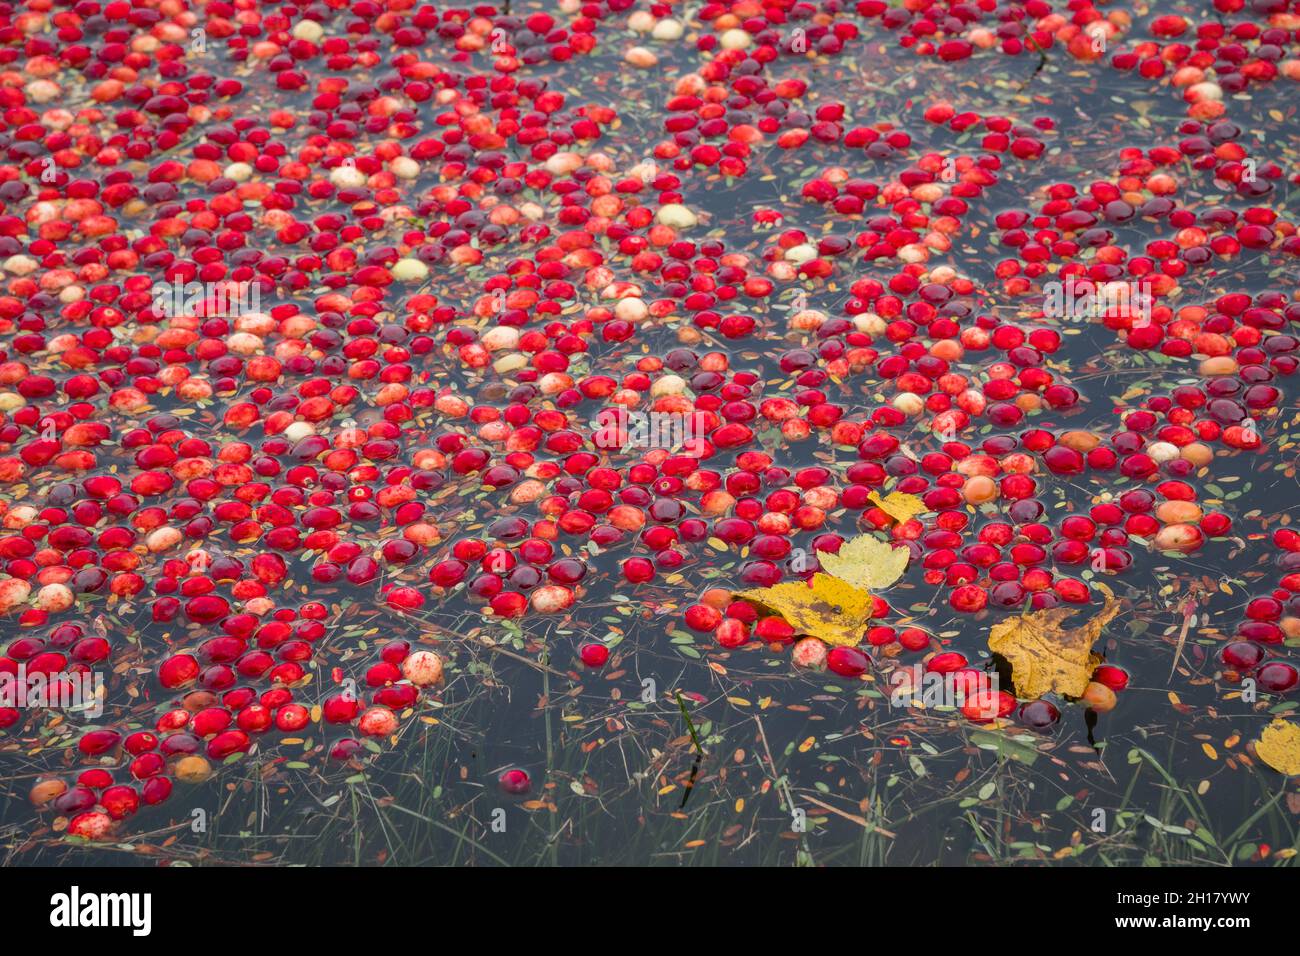 Leuchtend rote Preiselbeeren im überfluteten Moor während der jährlichen Herbsternte. Stockfoto